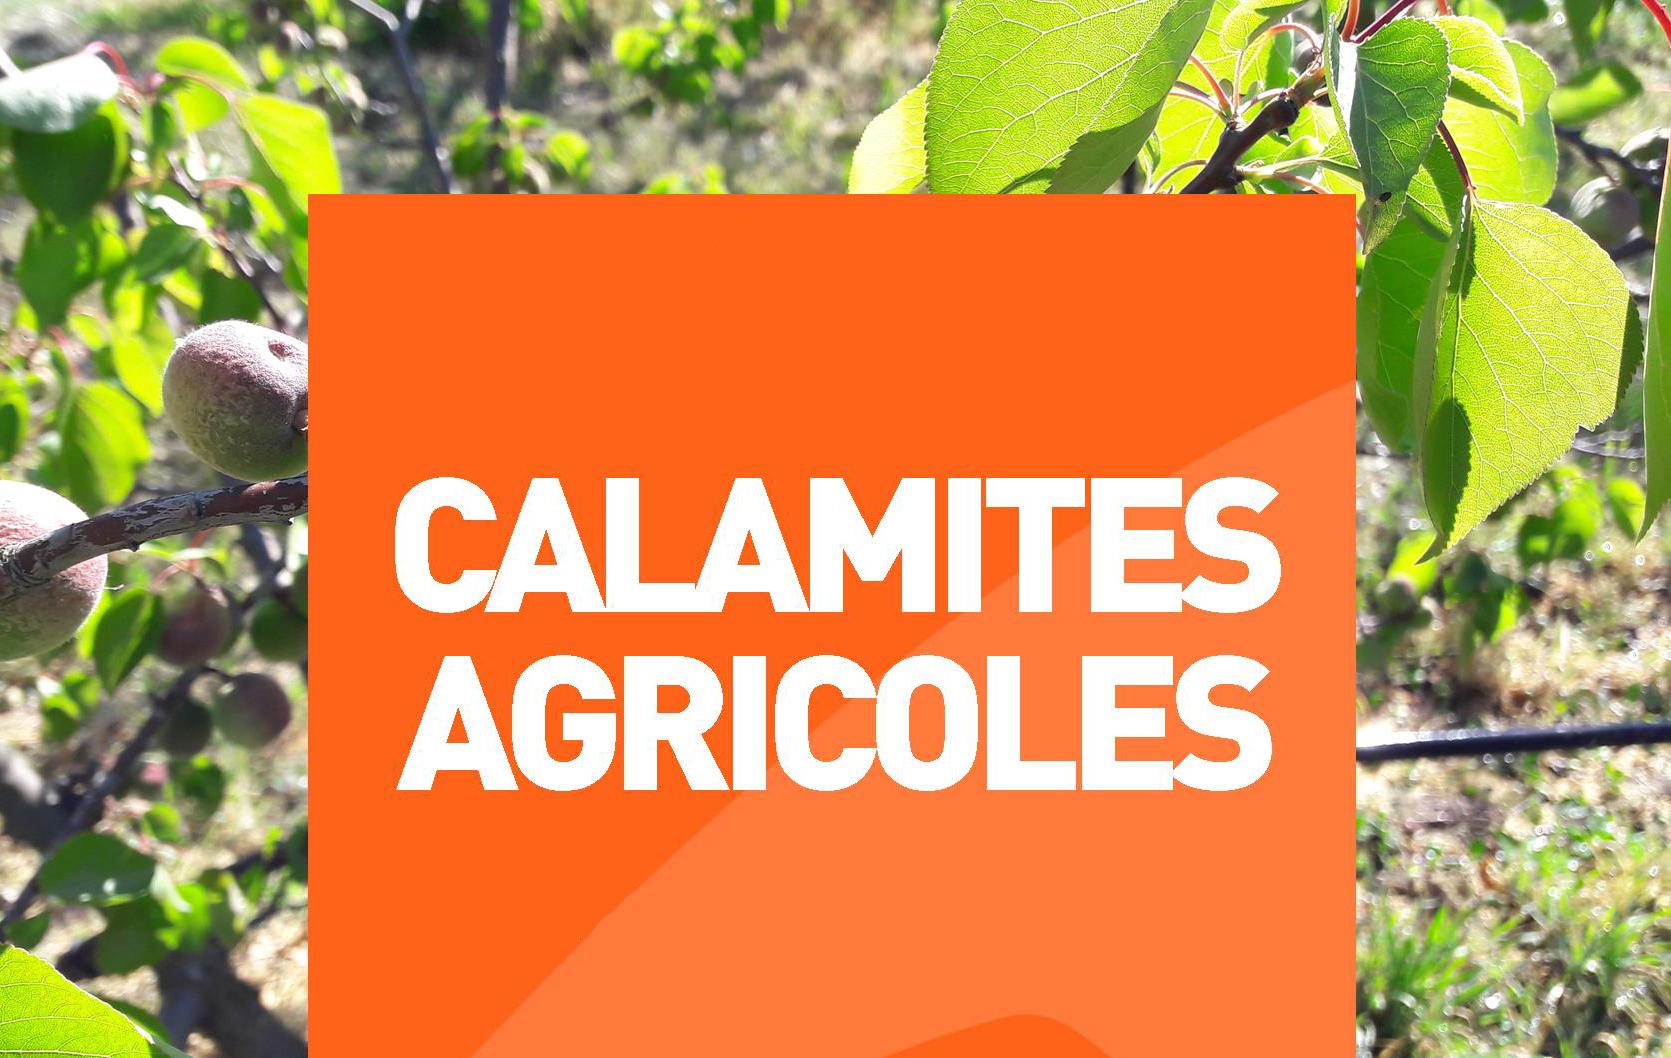 Image de couverture - Information calamités agricoles (épisodes de grêle récents)